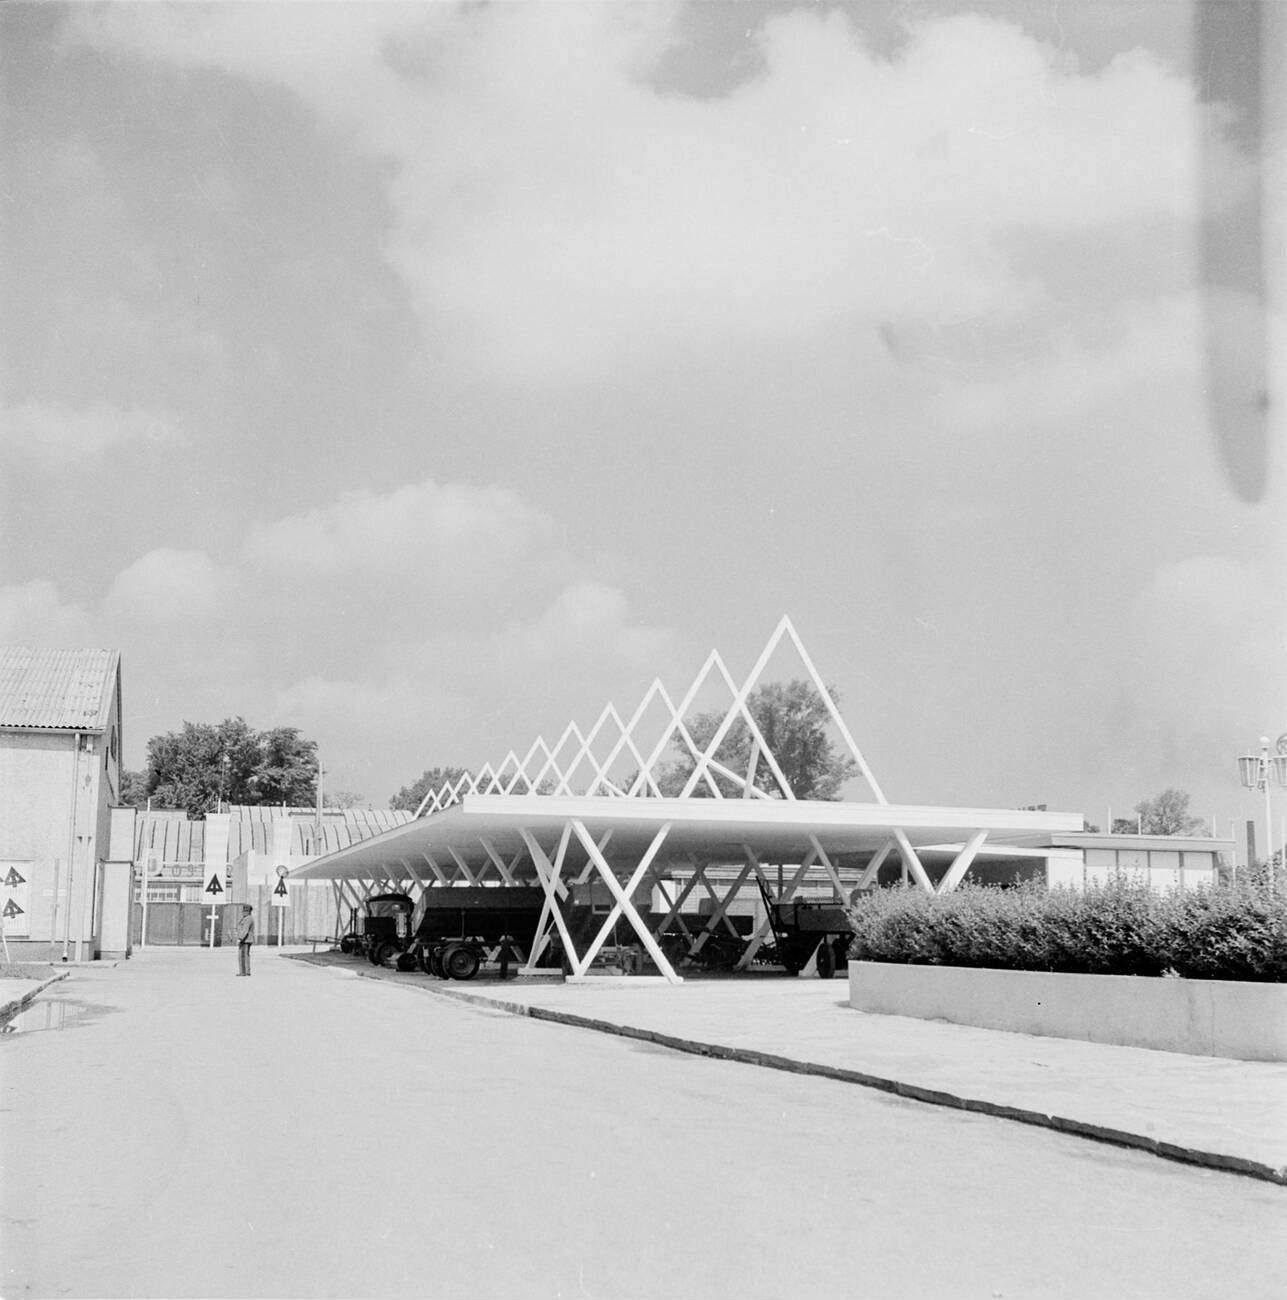 Gewerbeausstellung, Vienna, Austria. 1951.